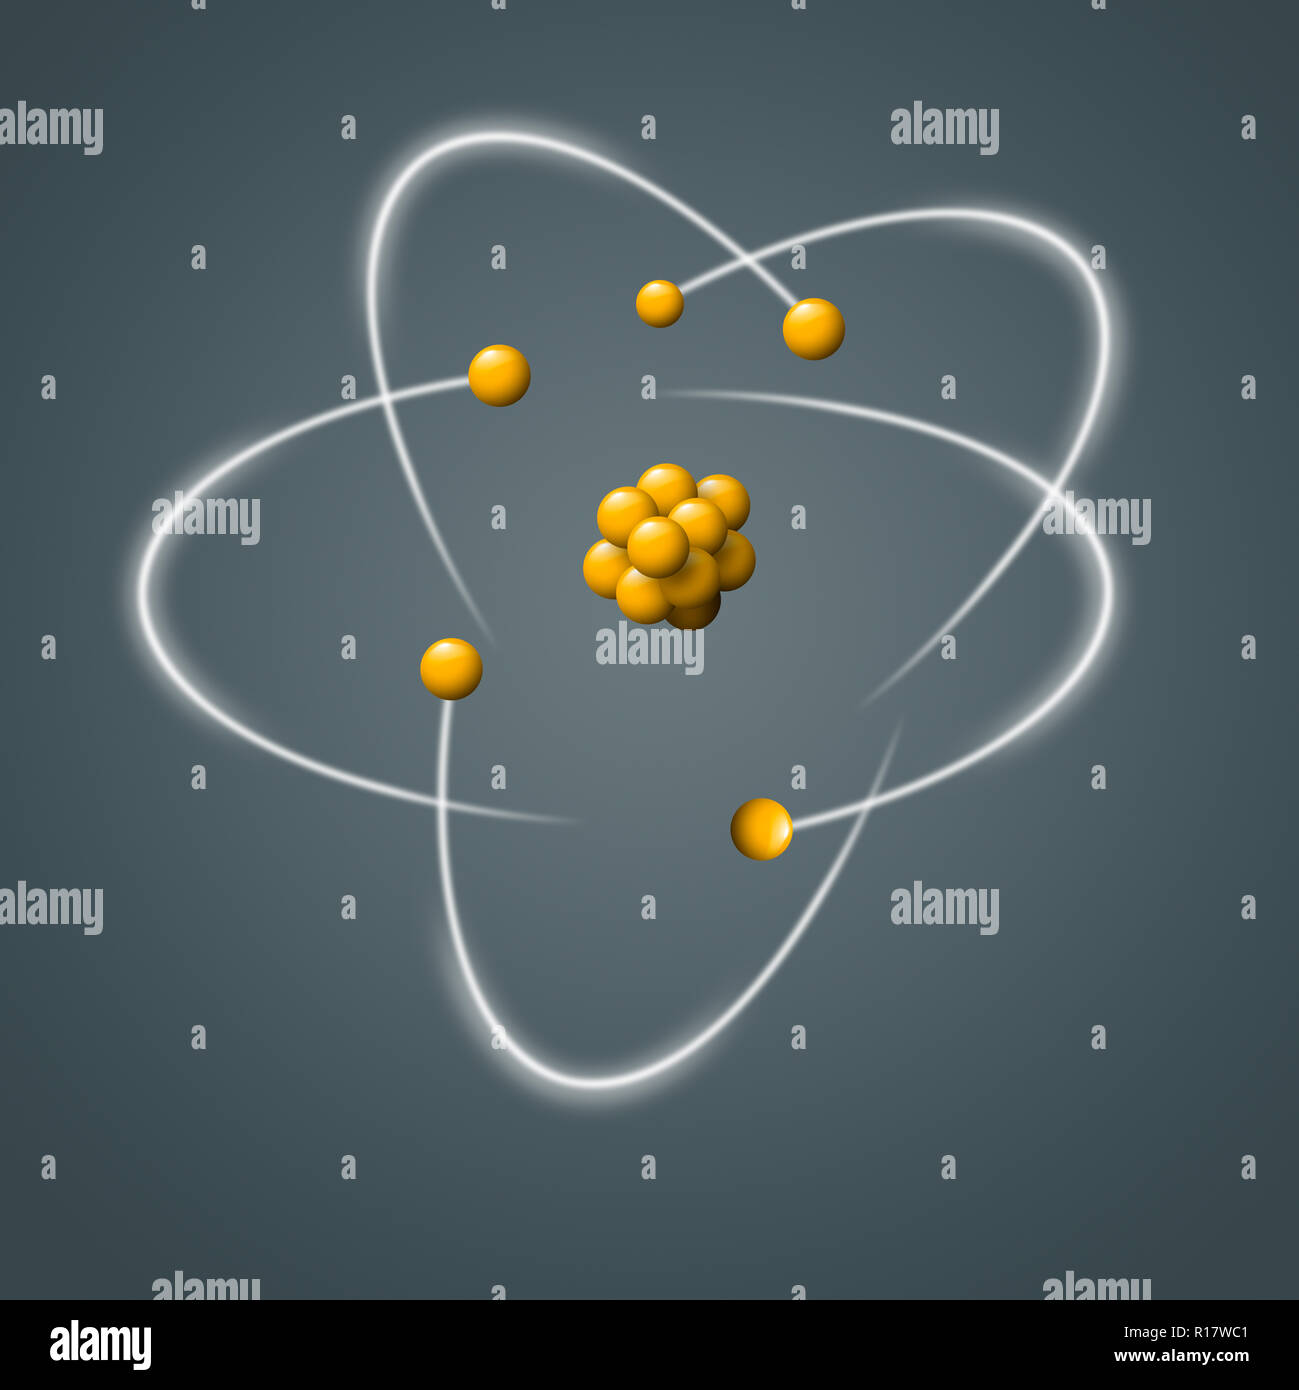 Des particules atomiques jaune entouré d'électrons en mouvement sur fond gris, d'une image numérique Banque D'Images